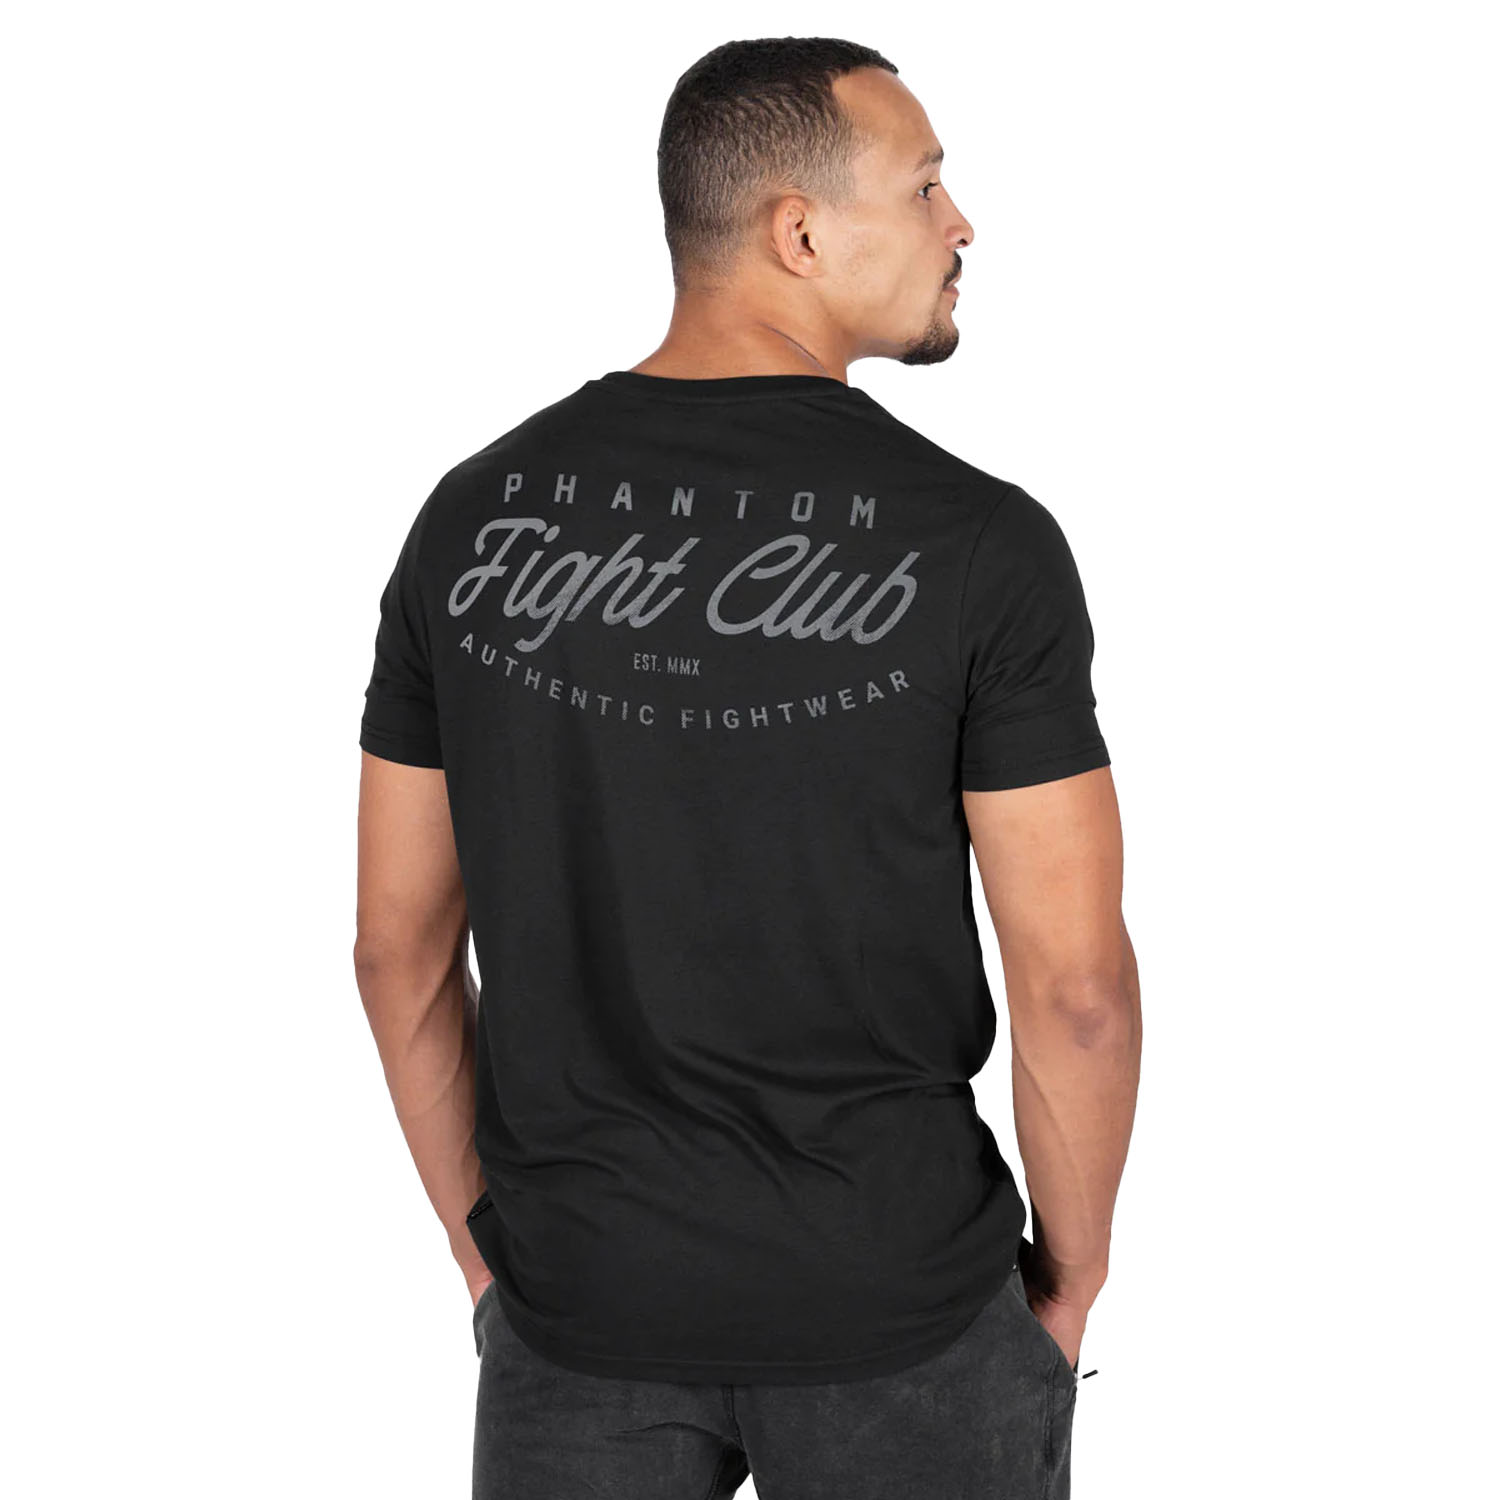 Phantom Athletics T-Shirt, Fight Club, black